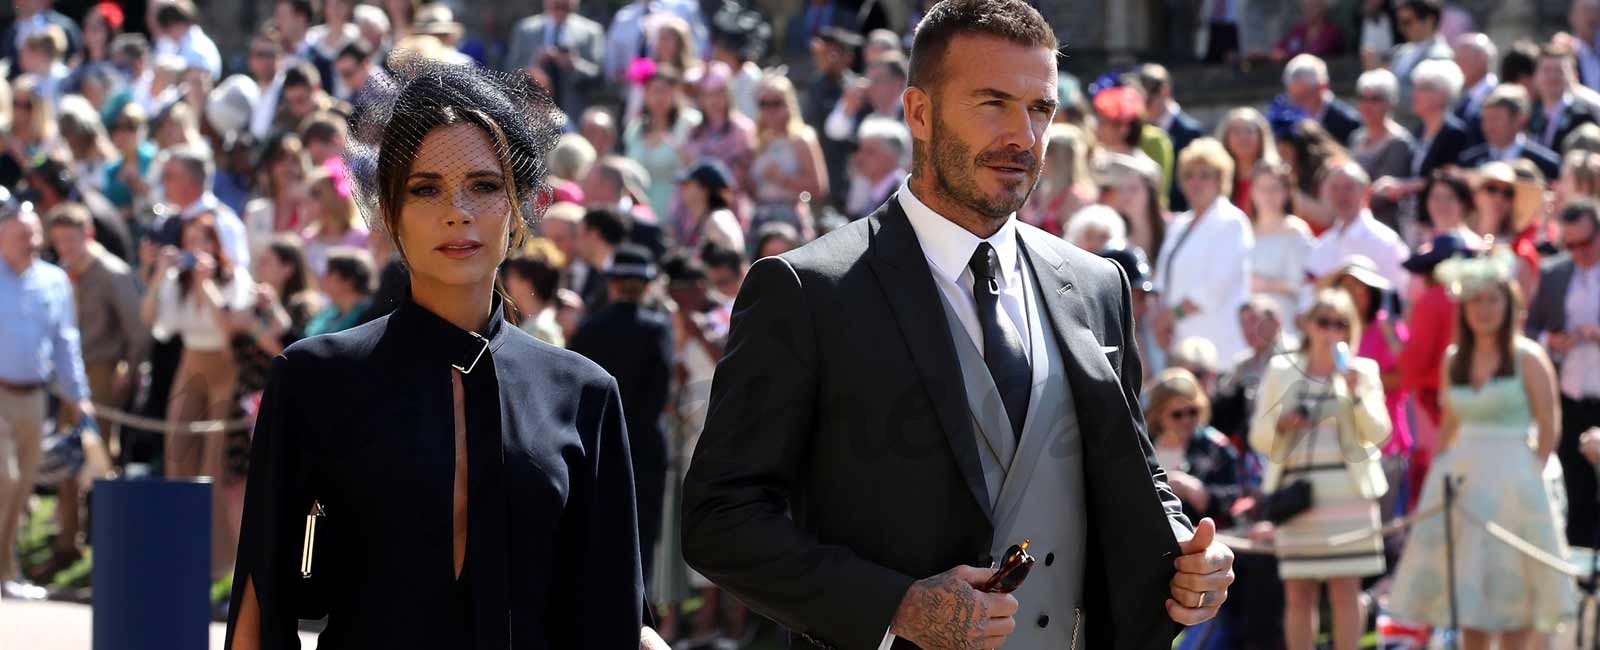 Los Beckham subastan sus looks de la boda del príncipe Harry y Meghan Markle